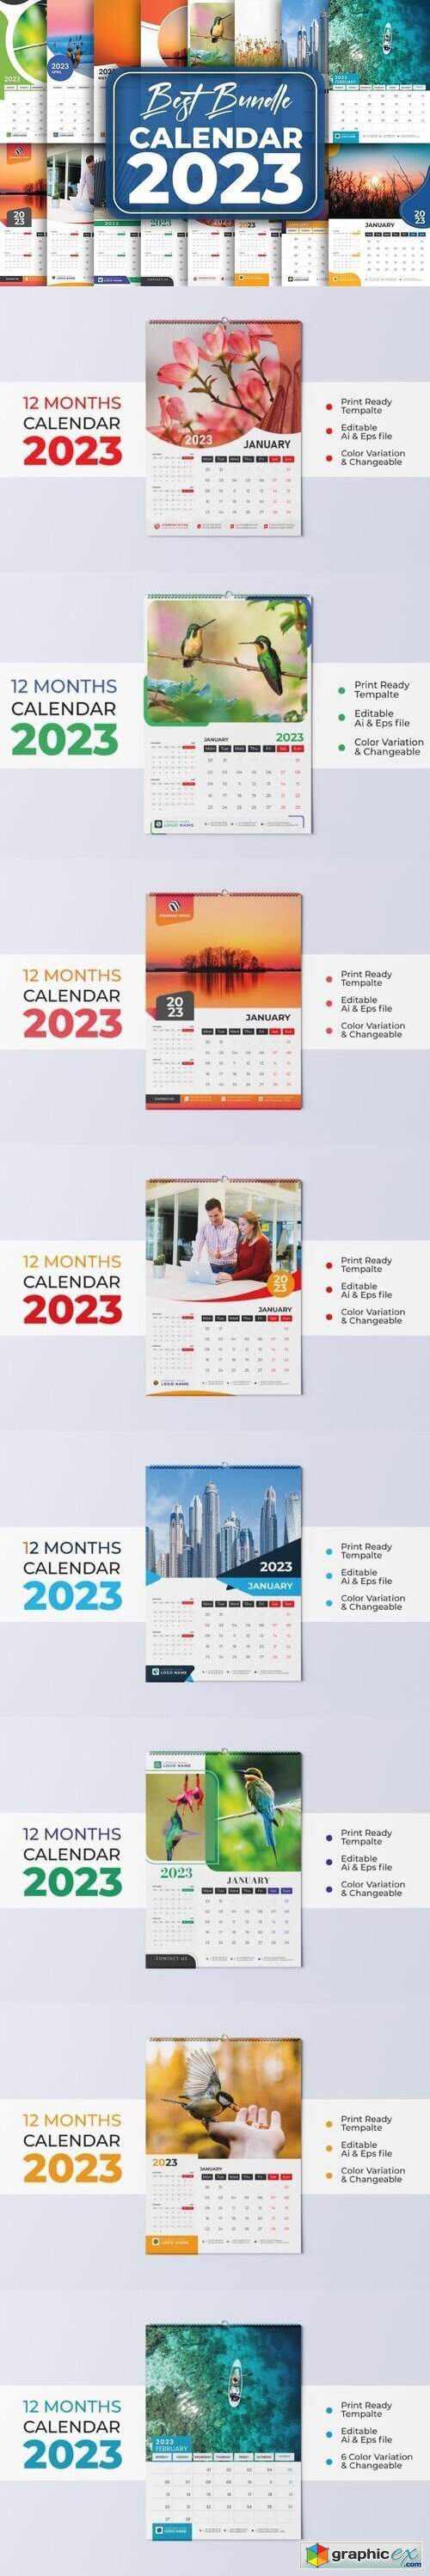 New Calendar 2023 Bundle